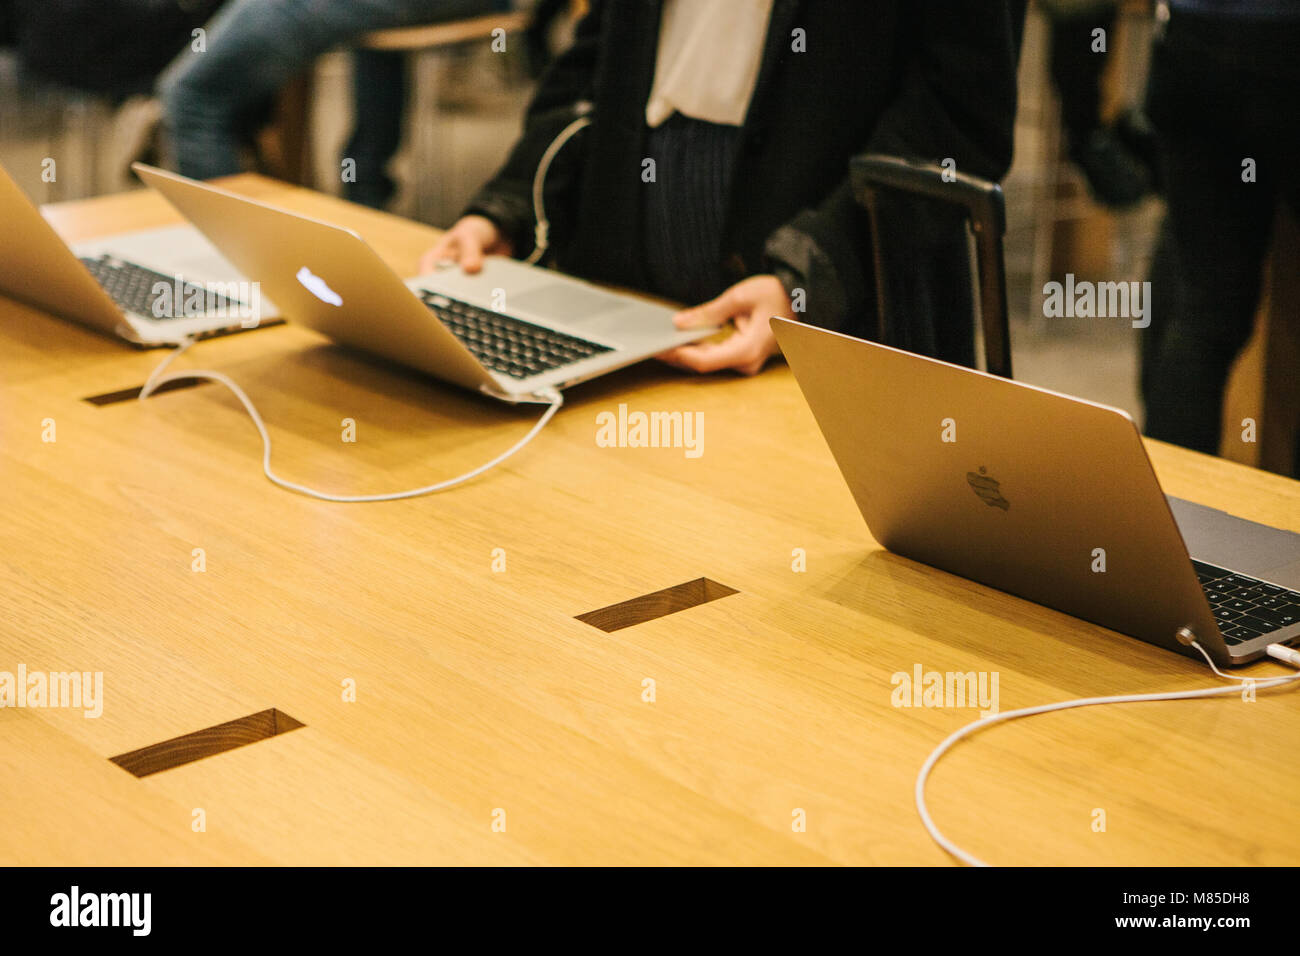 La presentazione dei nuovi prodotti Apple nella gazzetta Apple store. Gli acquirenti sono a guardare il nuovo MacBook Pro per l'acquisto. Il tanto atteso evento. Foto Stock